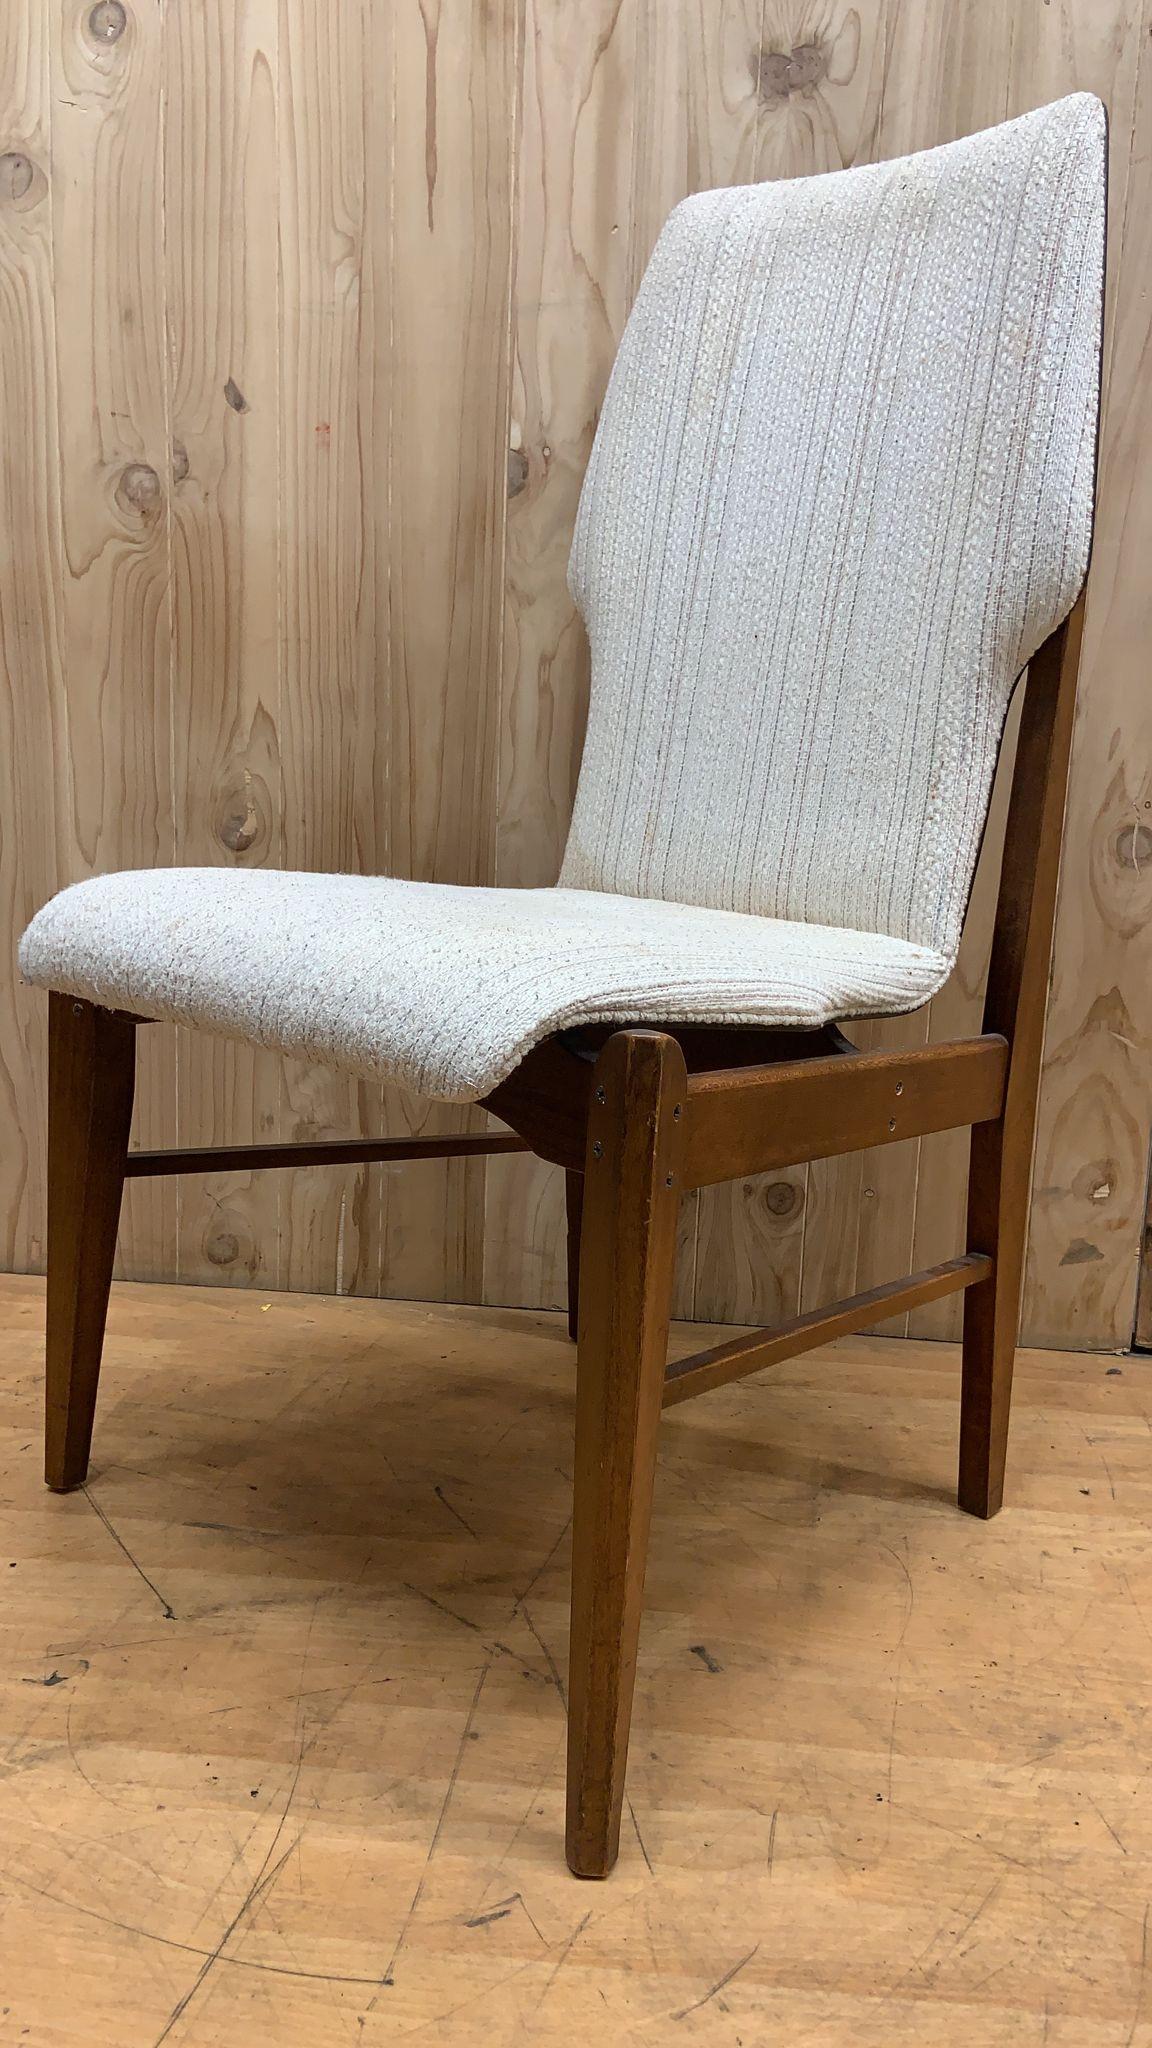 MCM Arne Vodder for Lane Furniture Walnut High Back Dining Chairs - Set of 4 For Sale 1